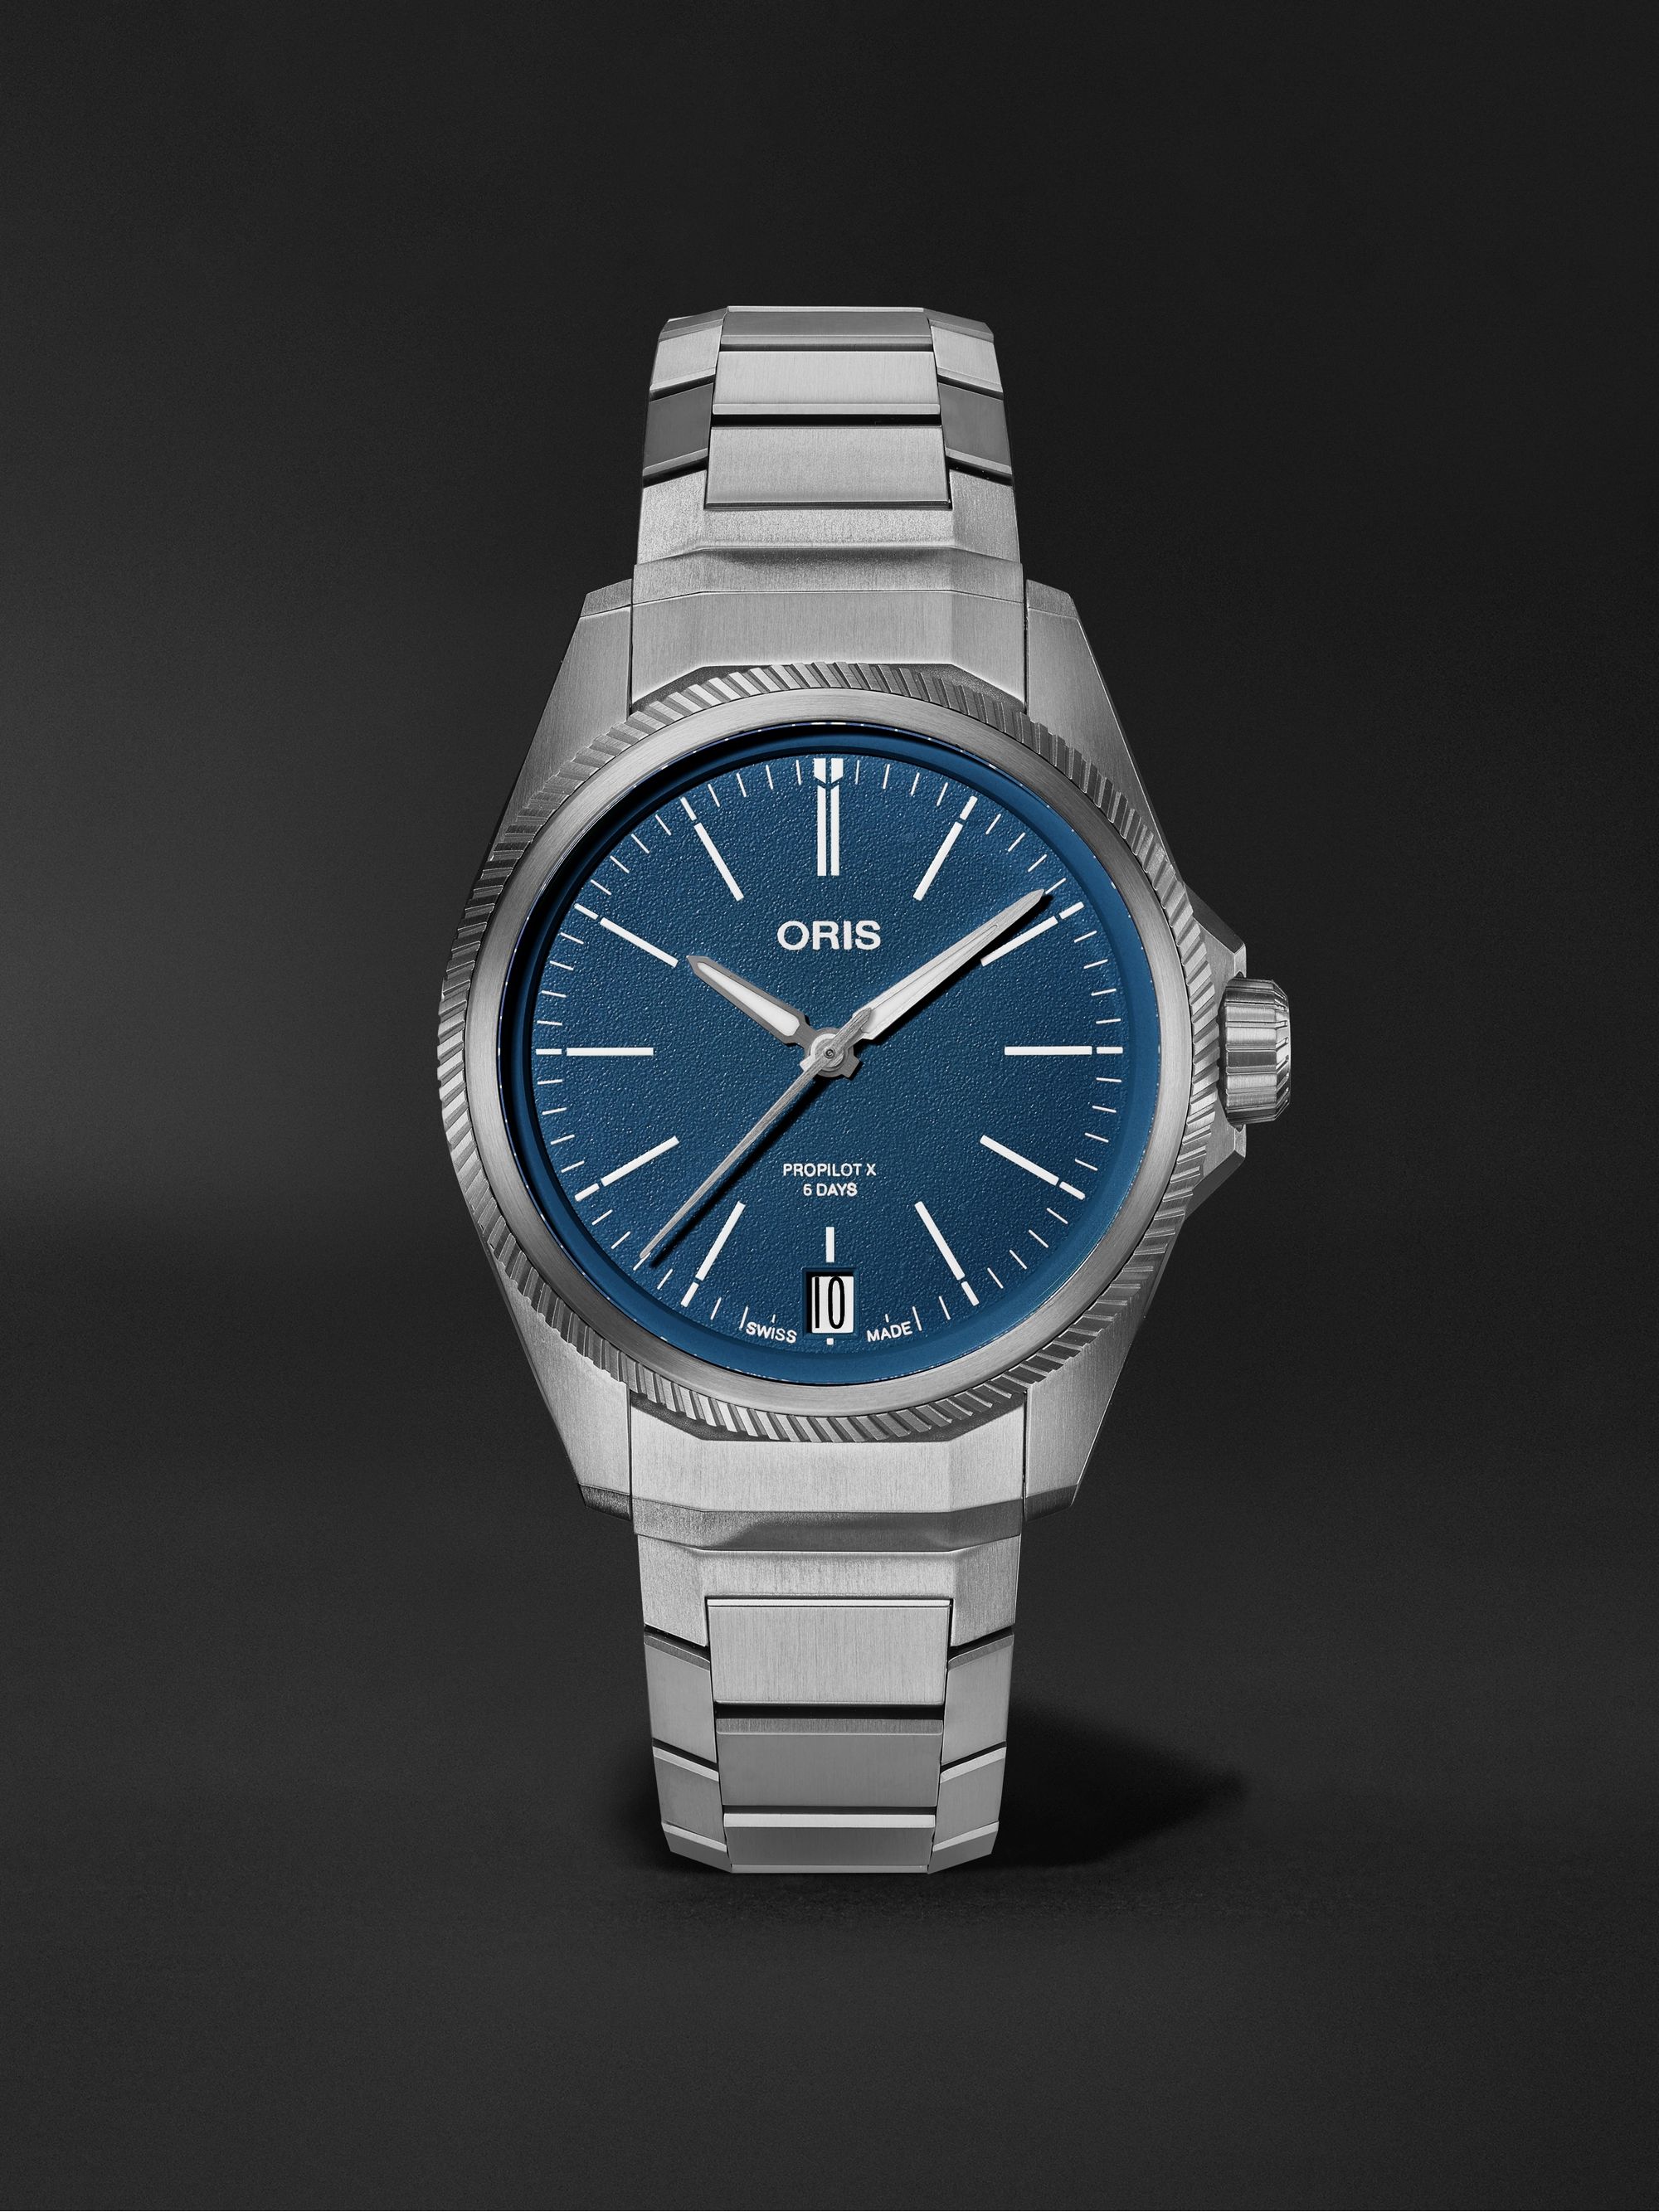 ORIS Pro Pilot PPX Automatic 39mm Titanium Watch, Ref. No. 01 400 7778 7155-07 7 20 01TLC